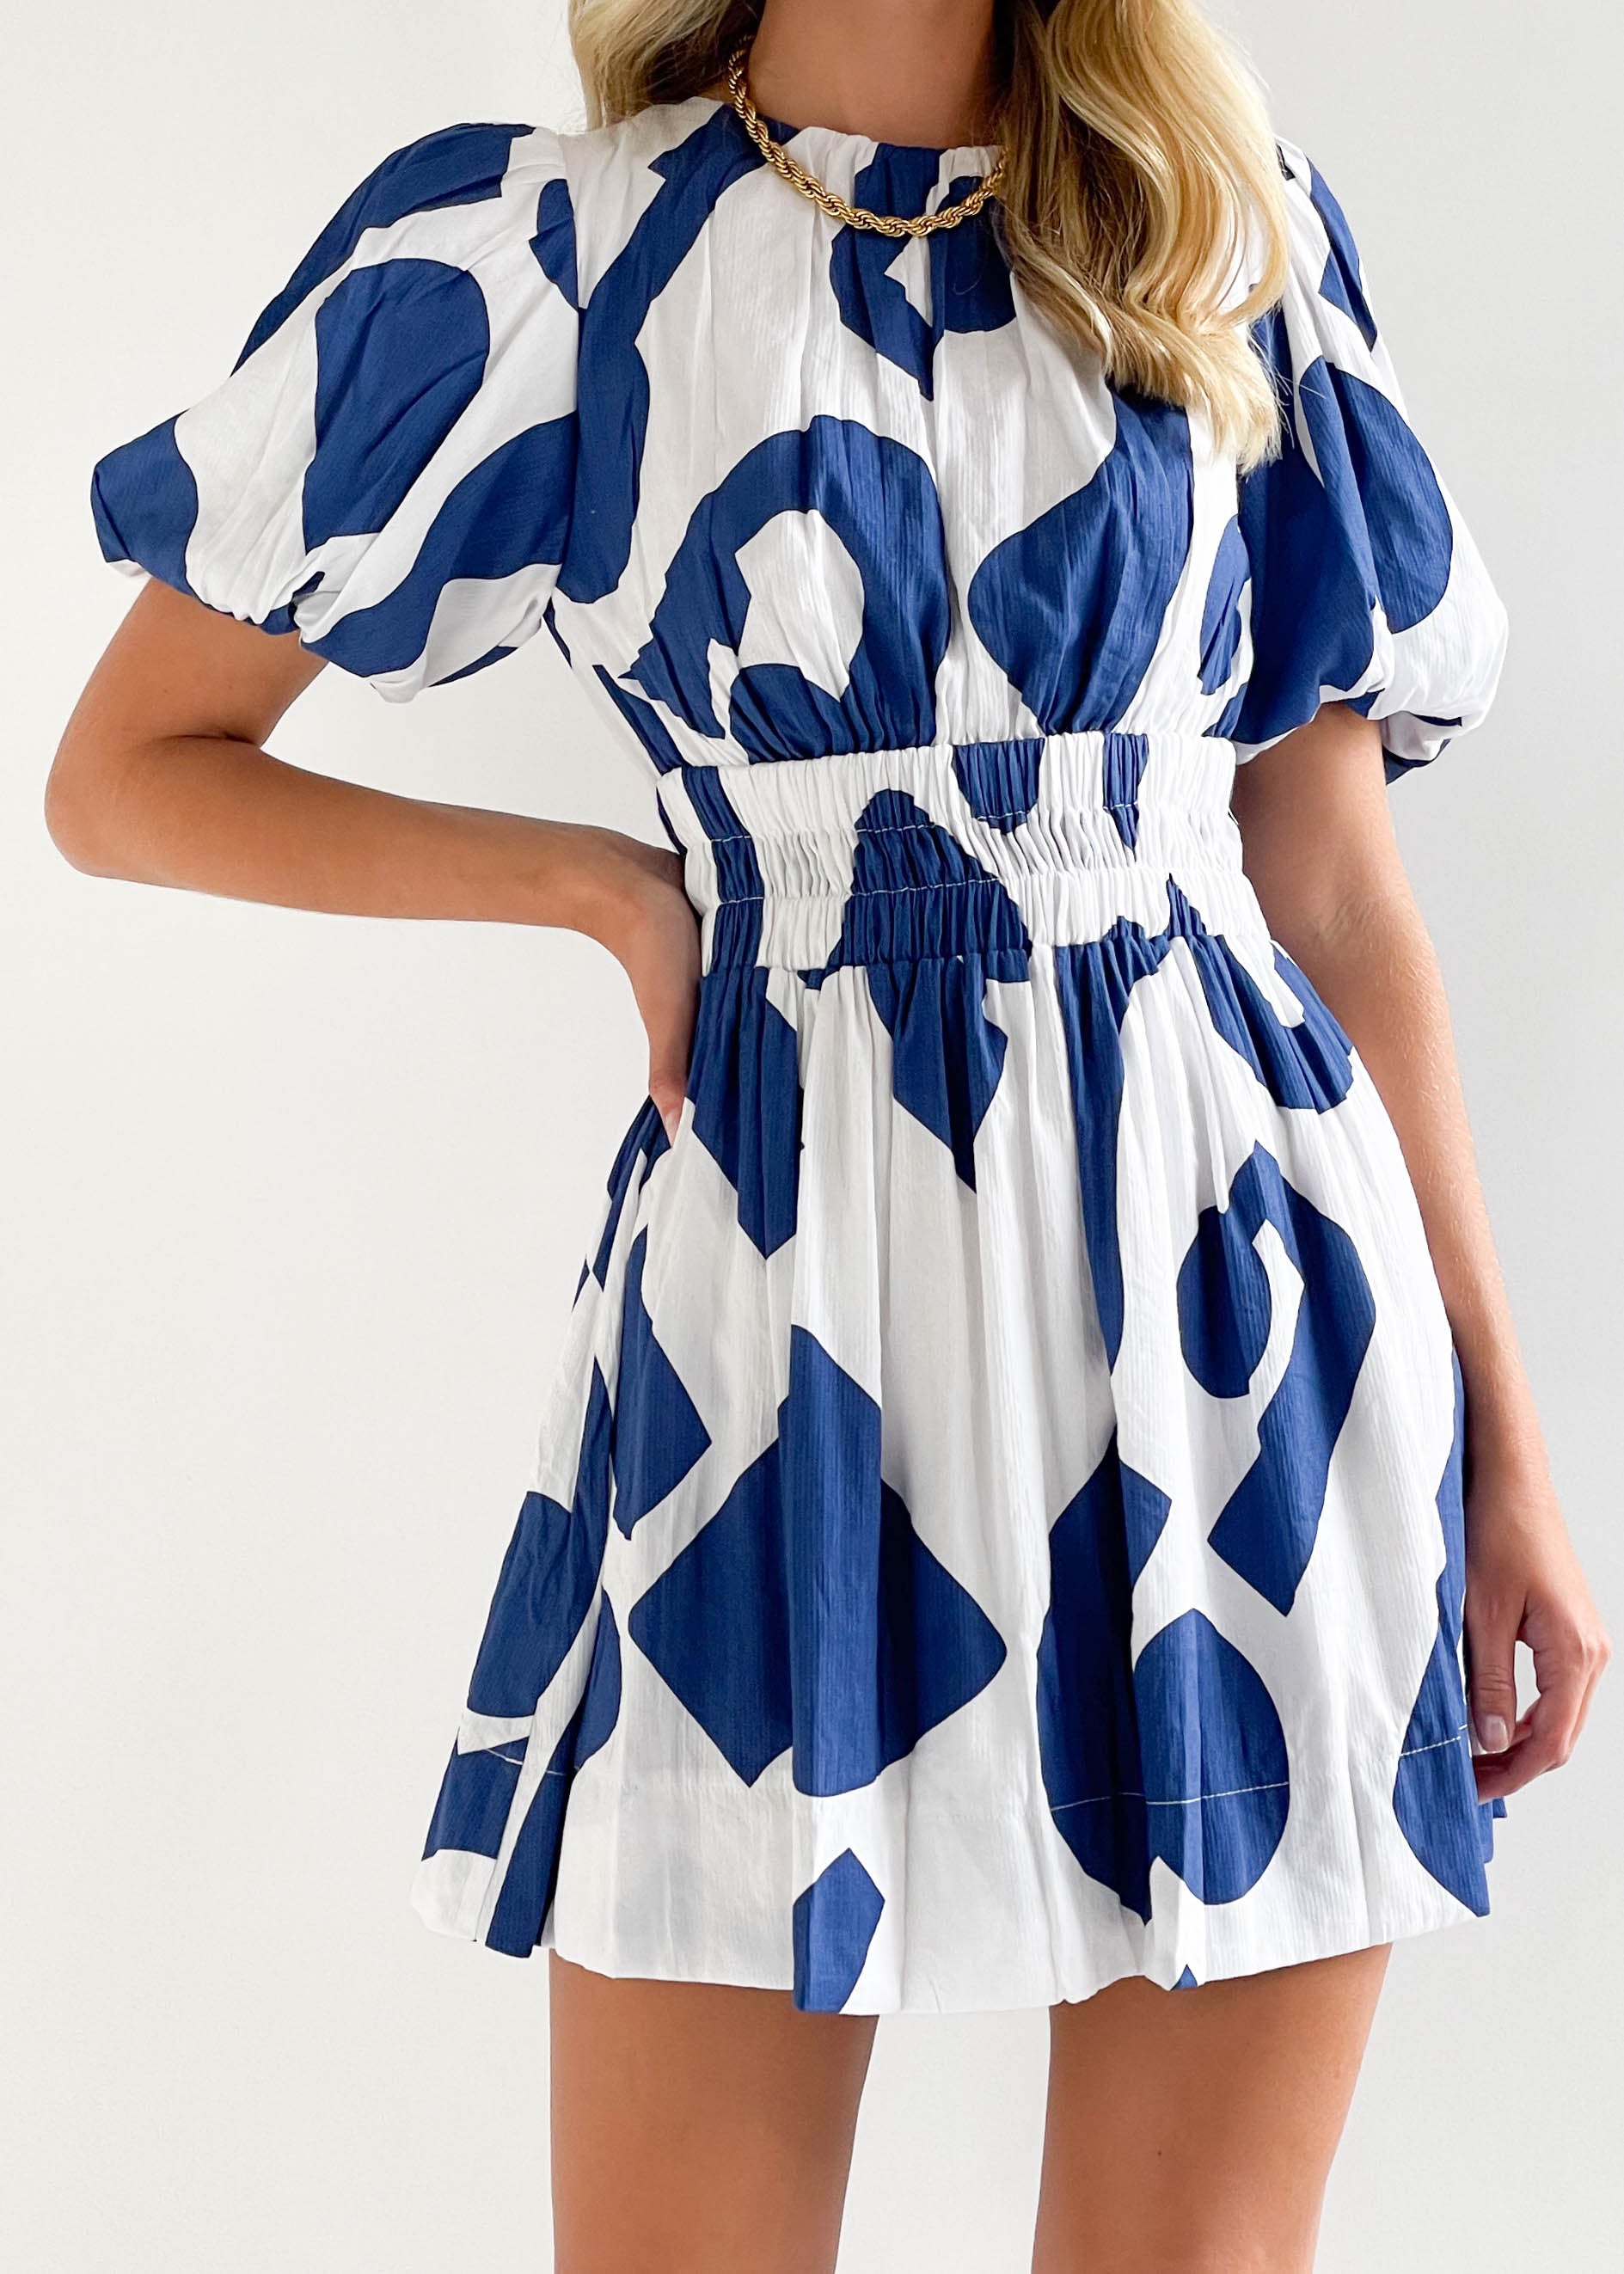 Maian Dress - Blue Geo